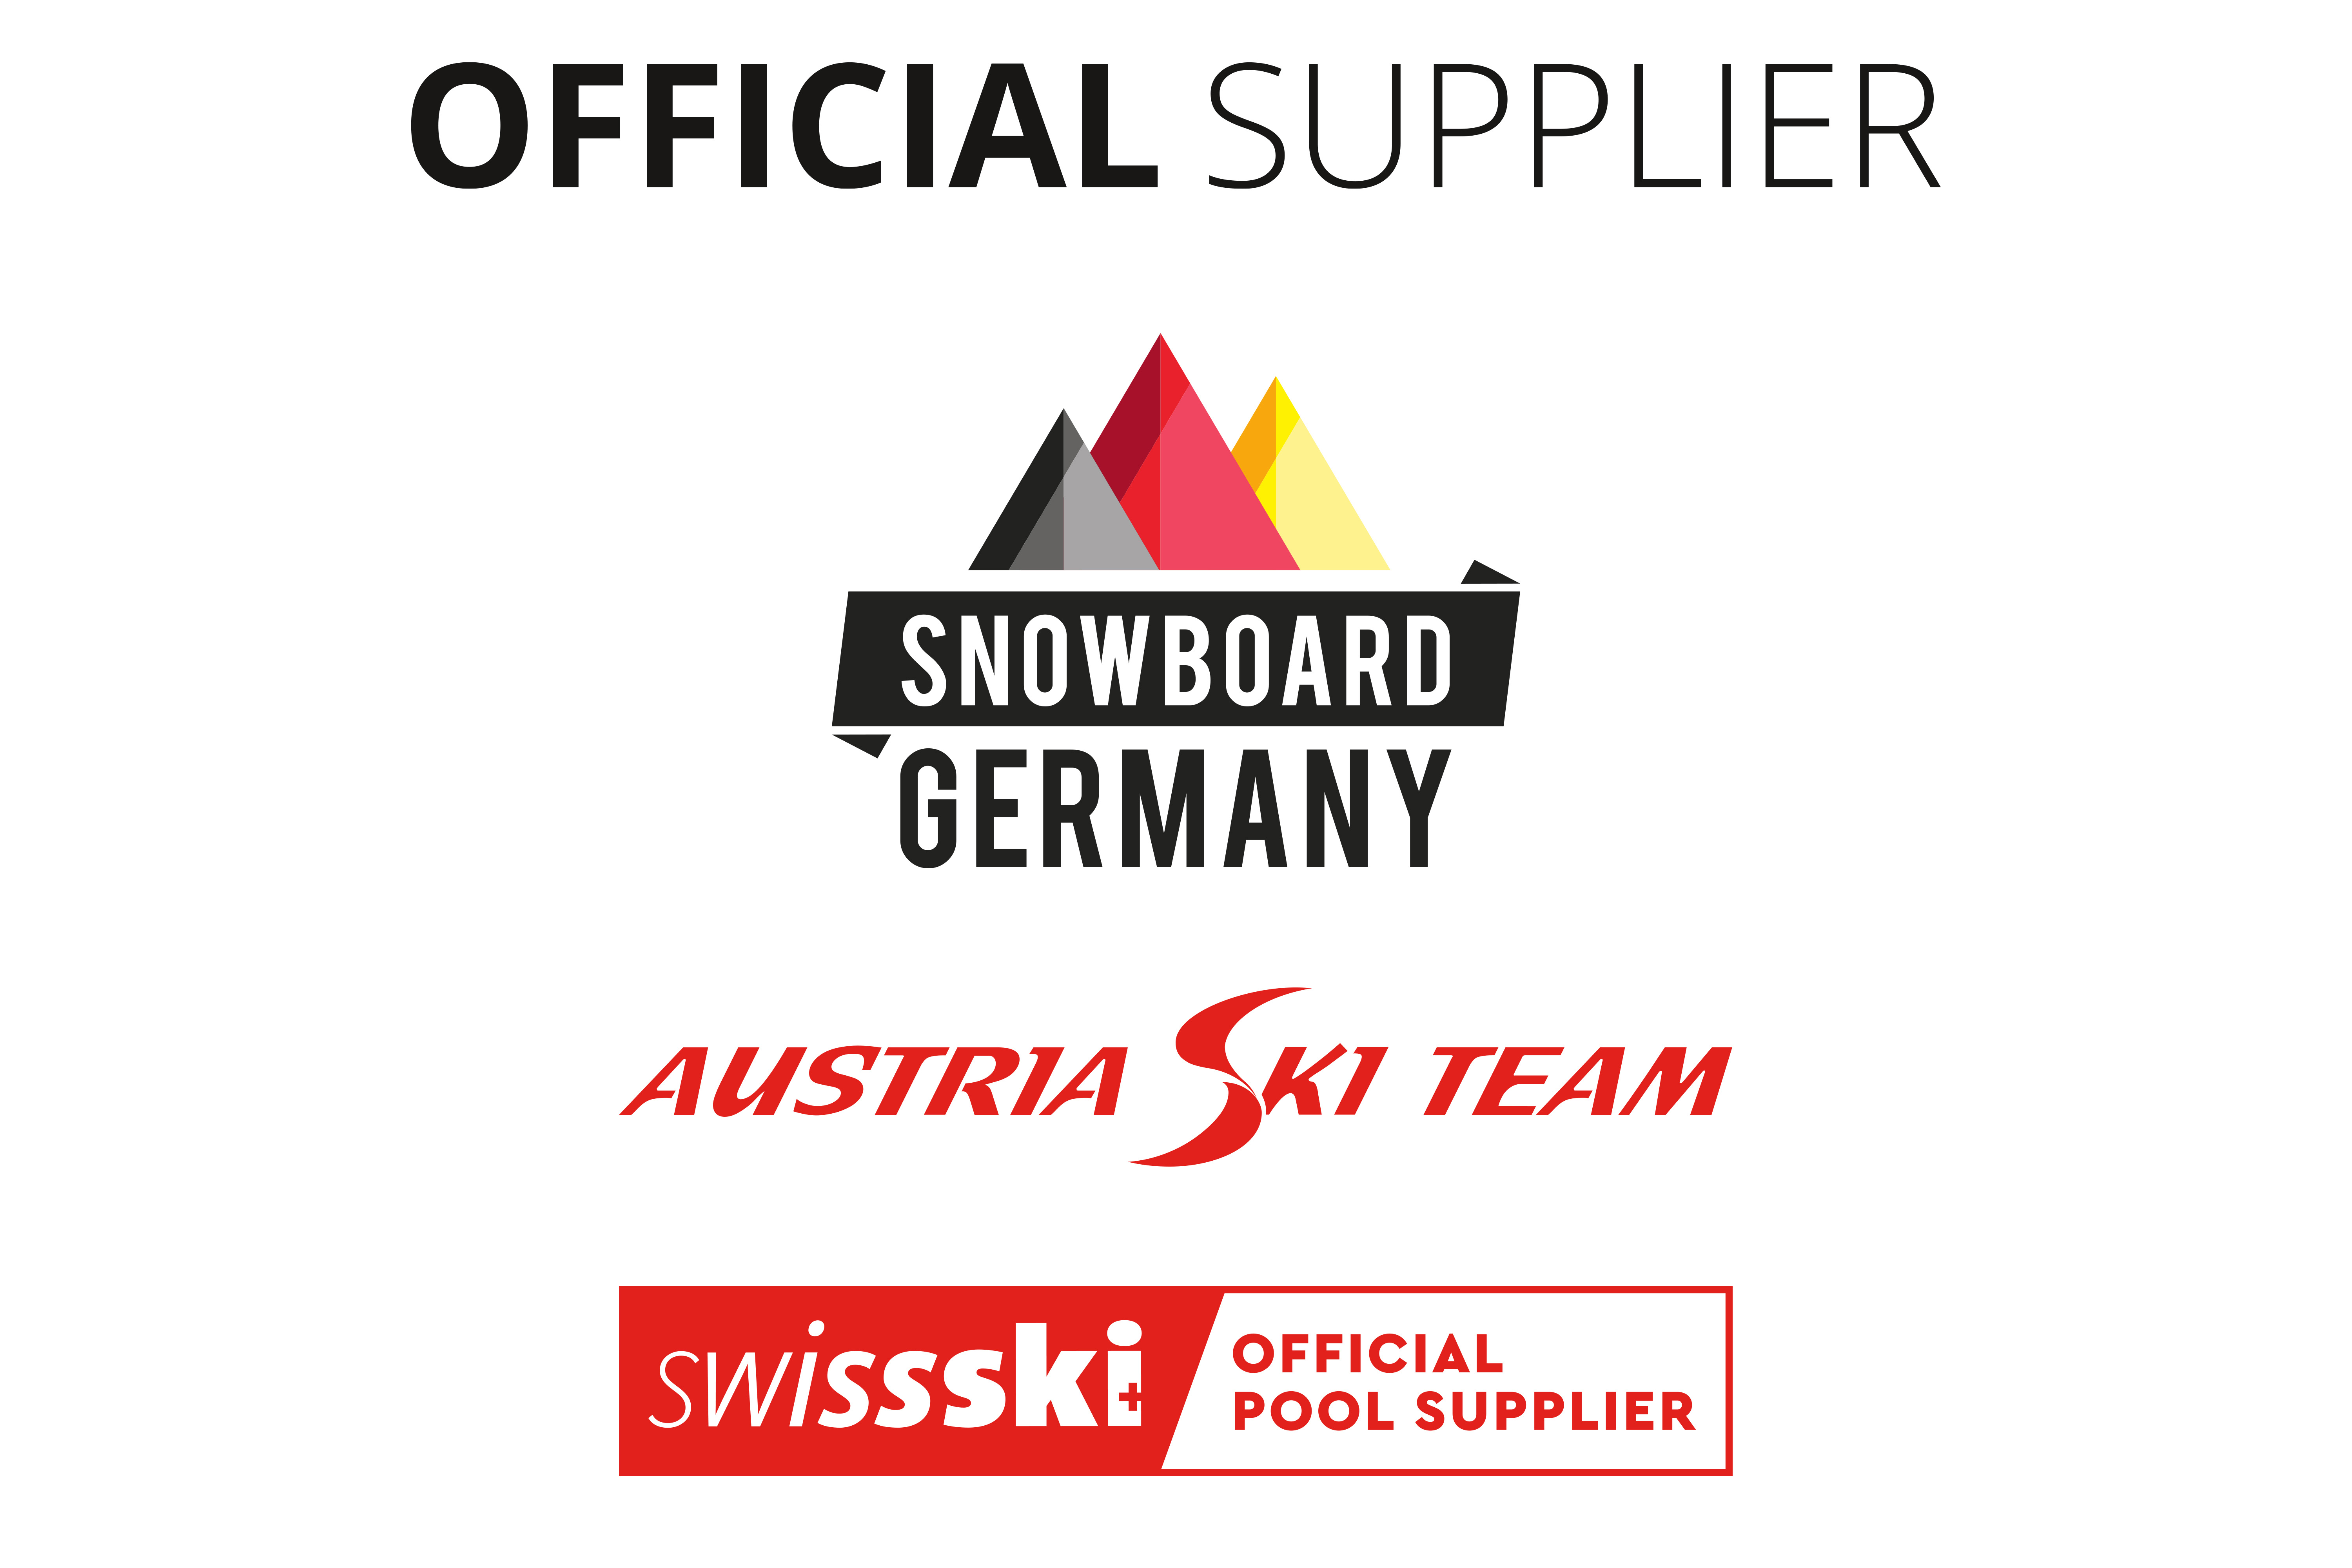 Foto con los logotipos de Swissski, Austria Ski Team y Snowboard Germany